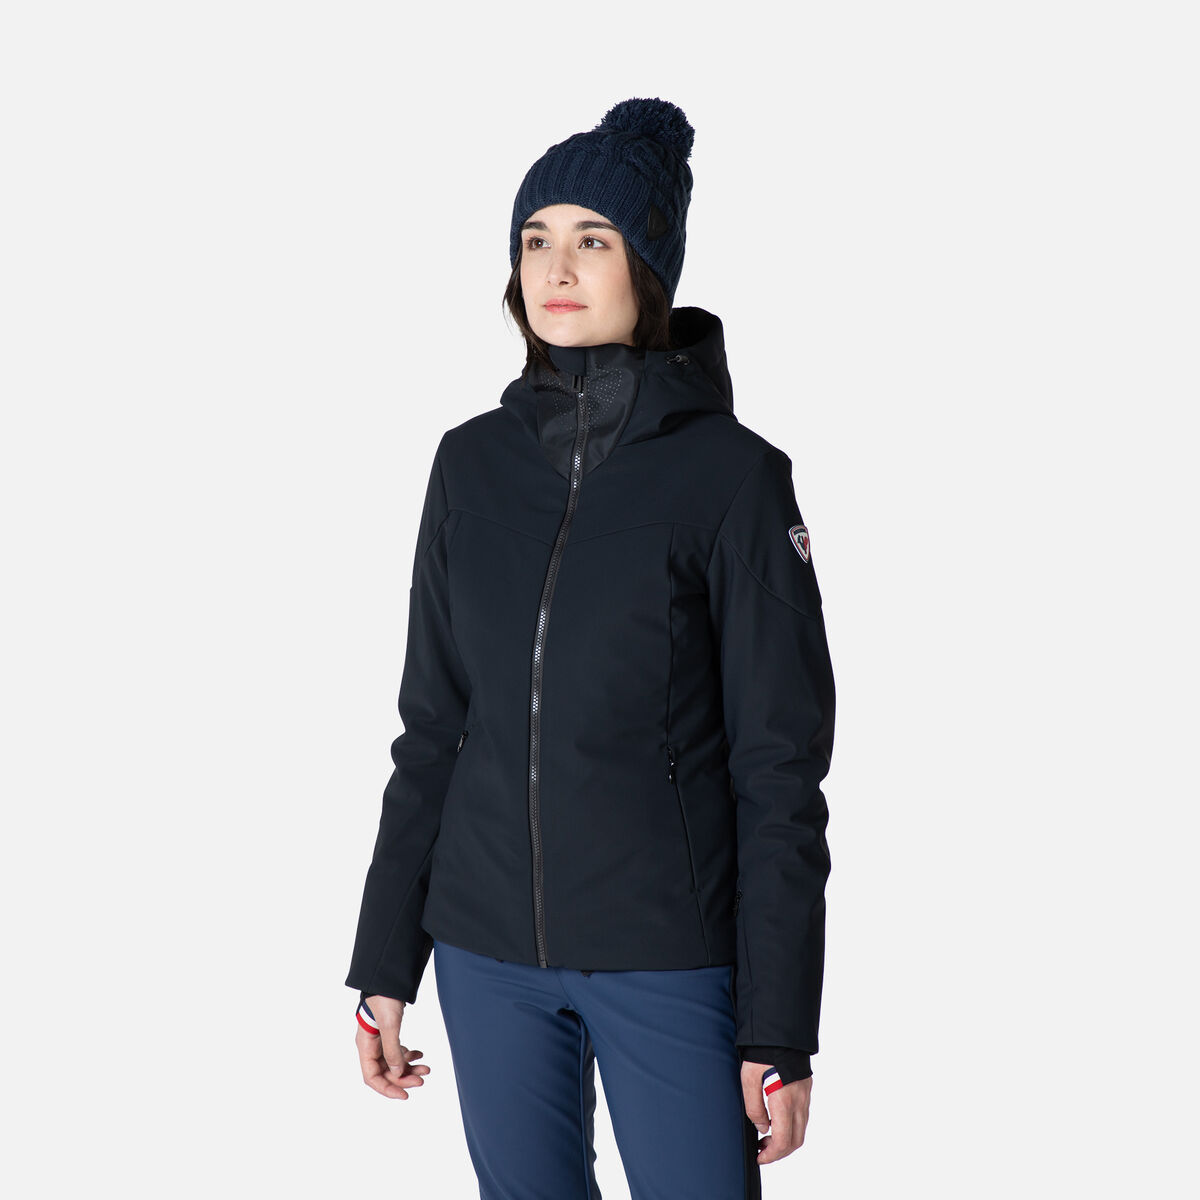 Rossignol guantes mujer abrigo ski star g